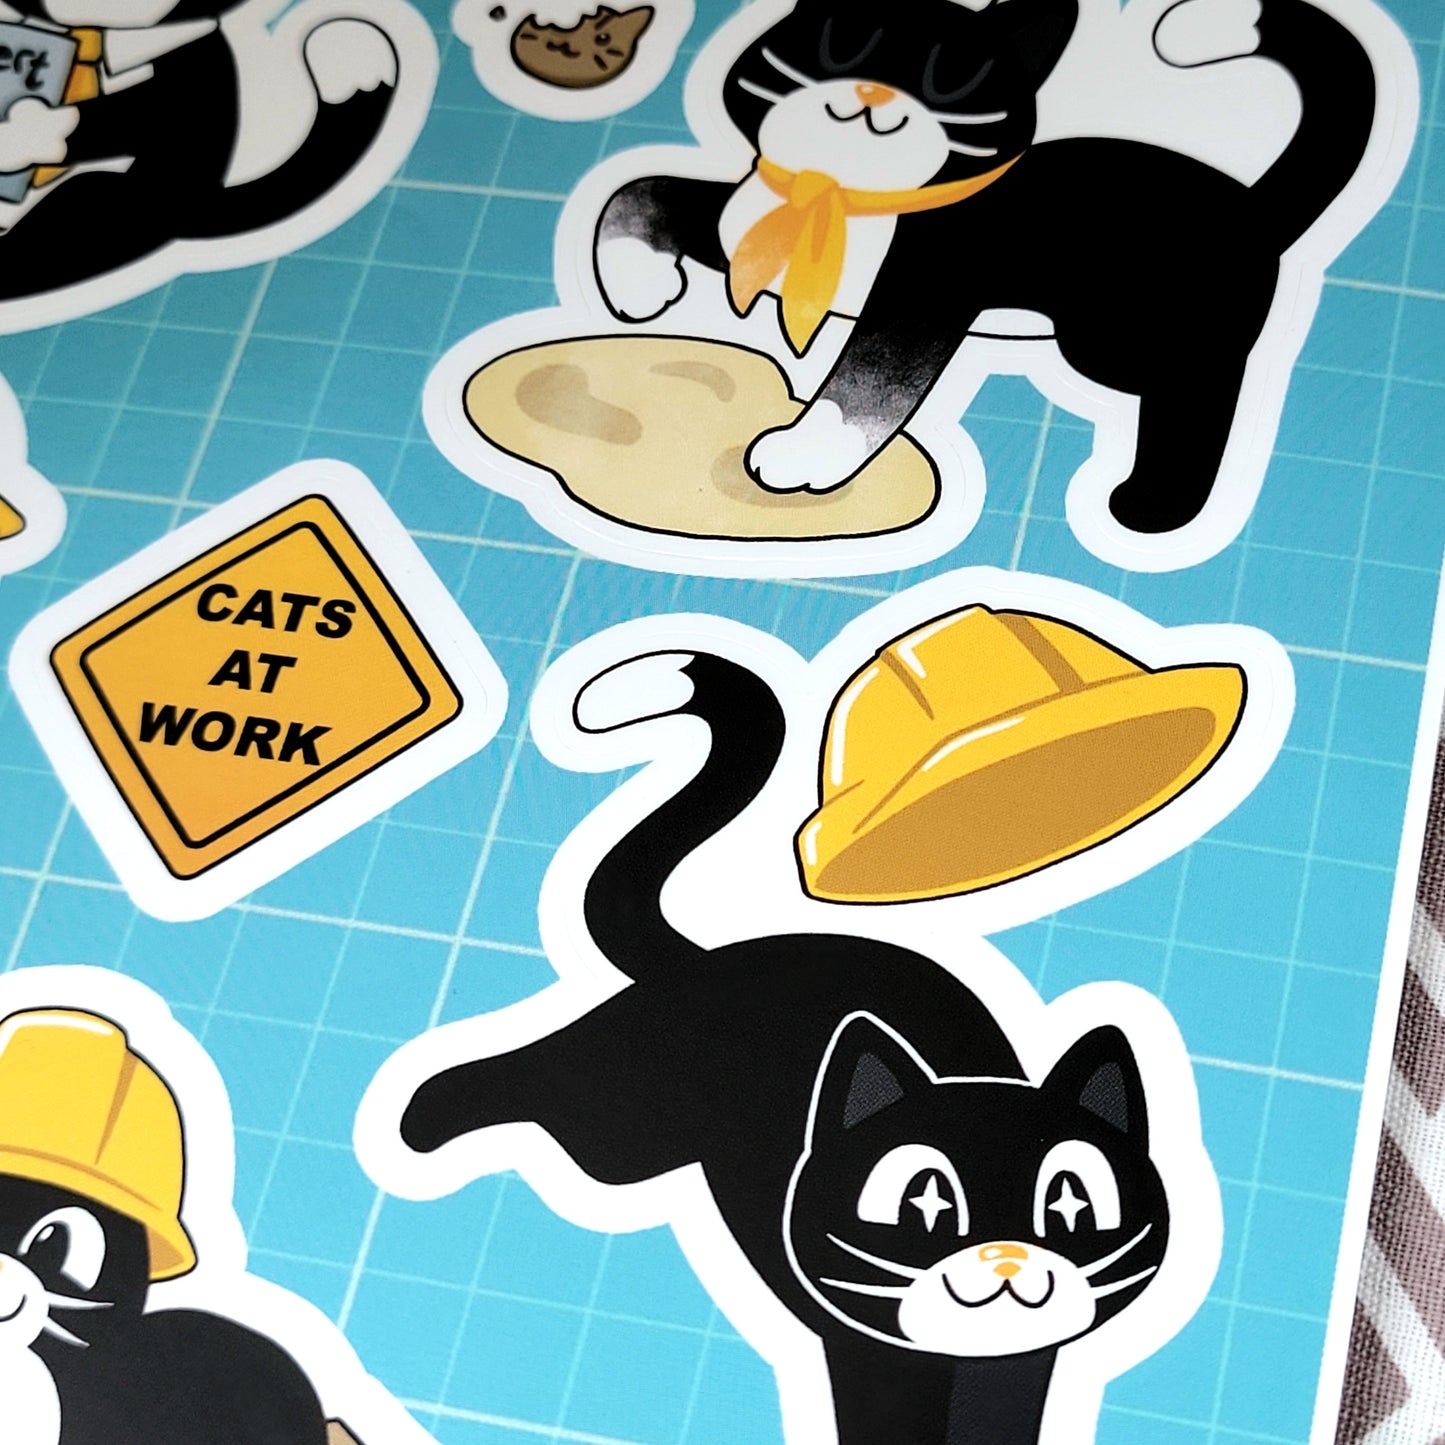 "Cats at Work" Jobert Sticker Sheet